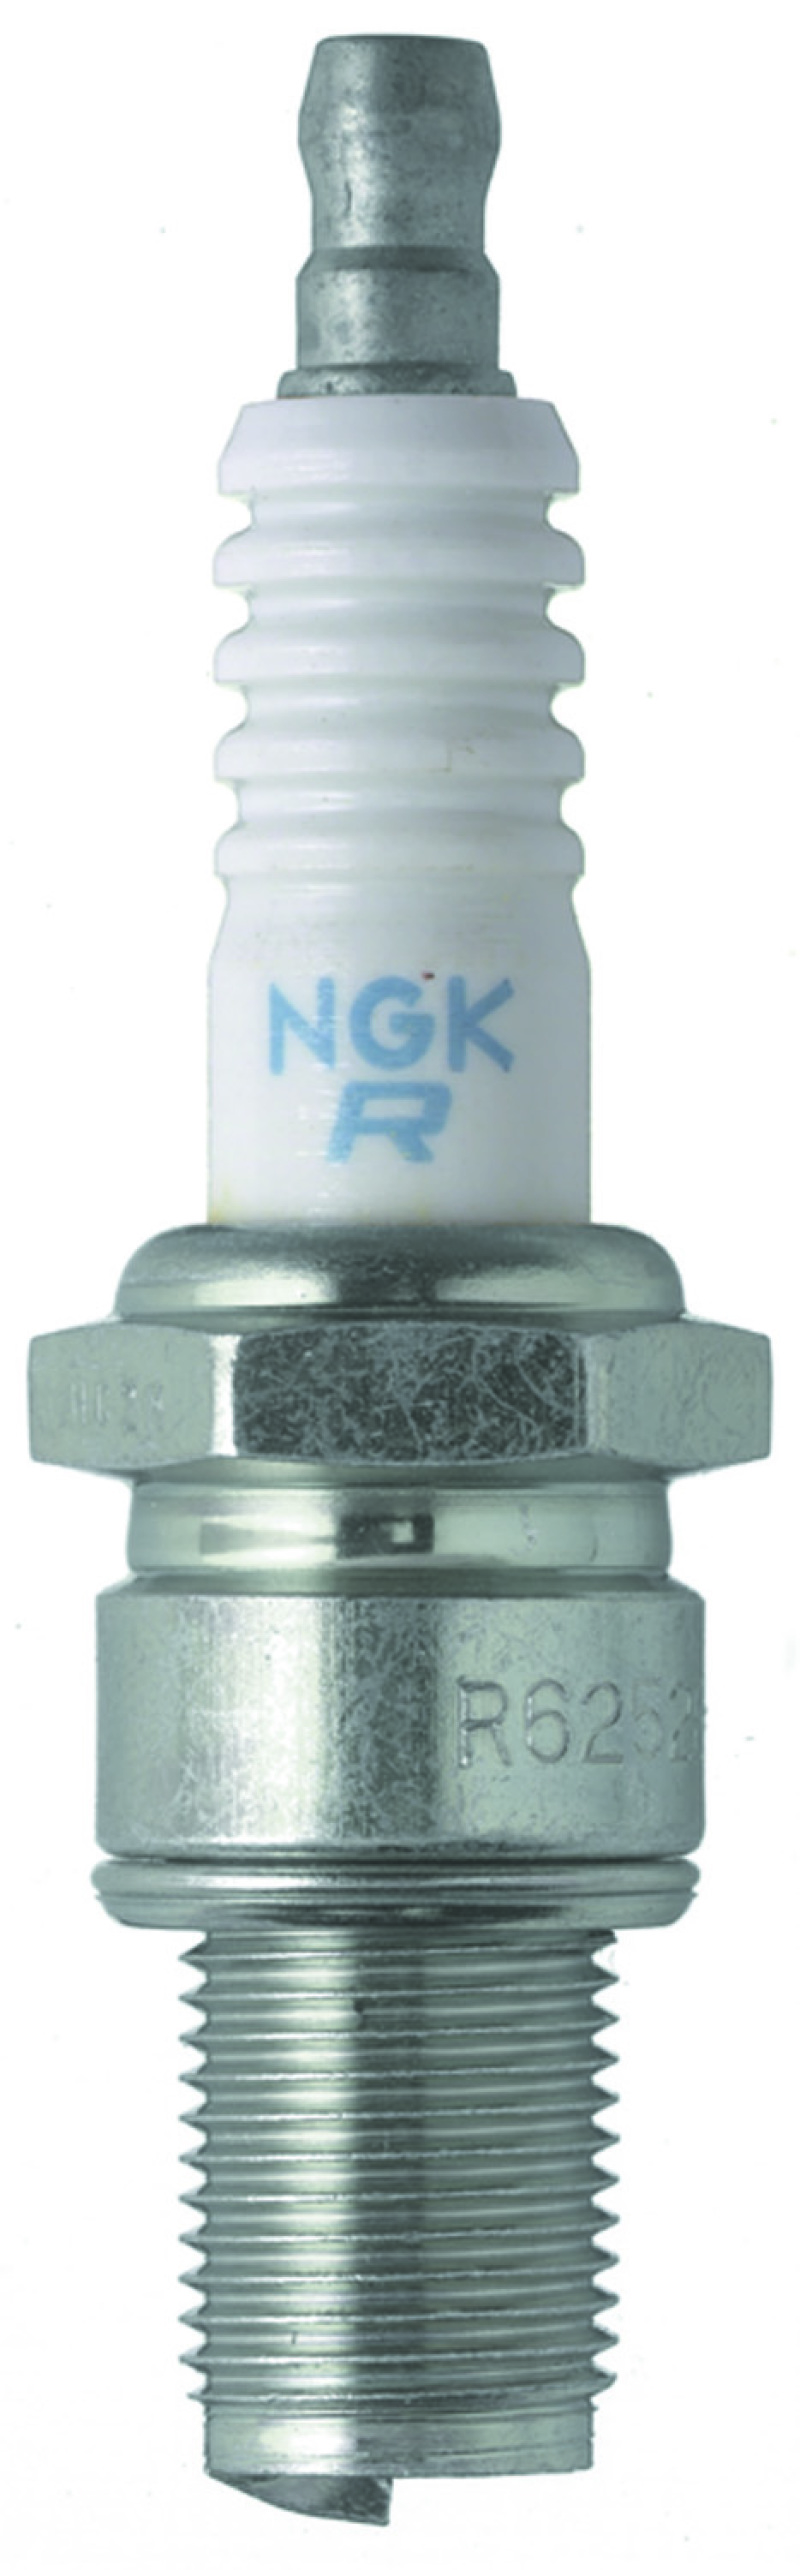 NGK Racing Spark Plug Box of 4 (R6918B-7) - 6259